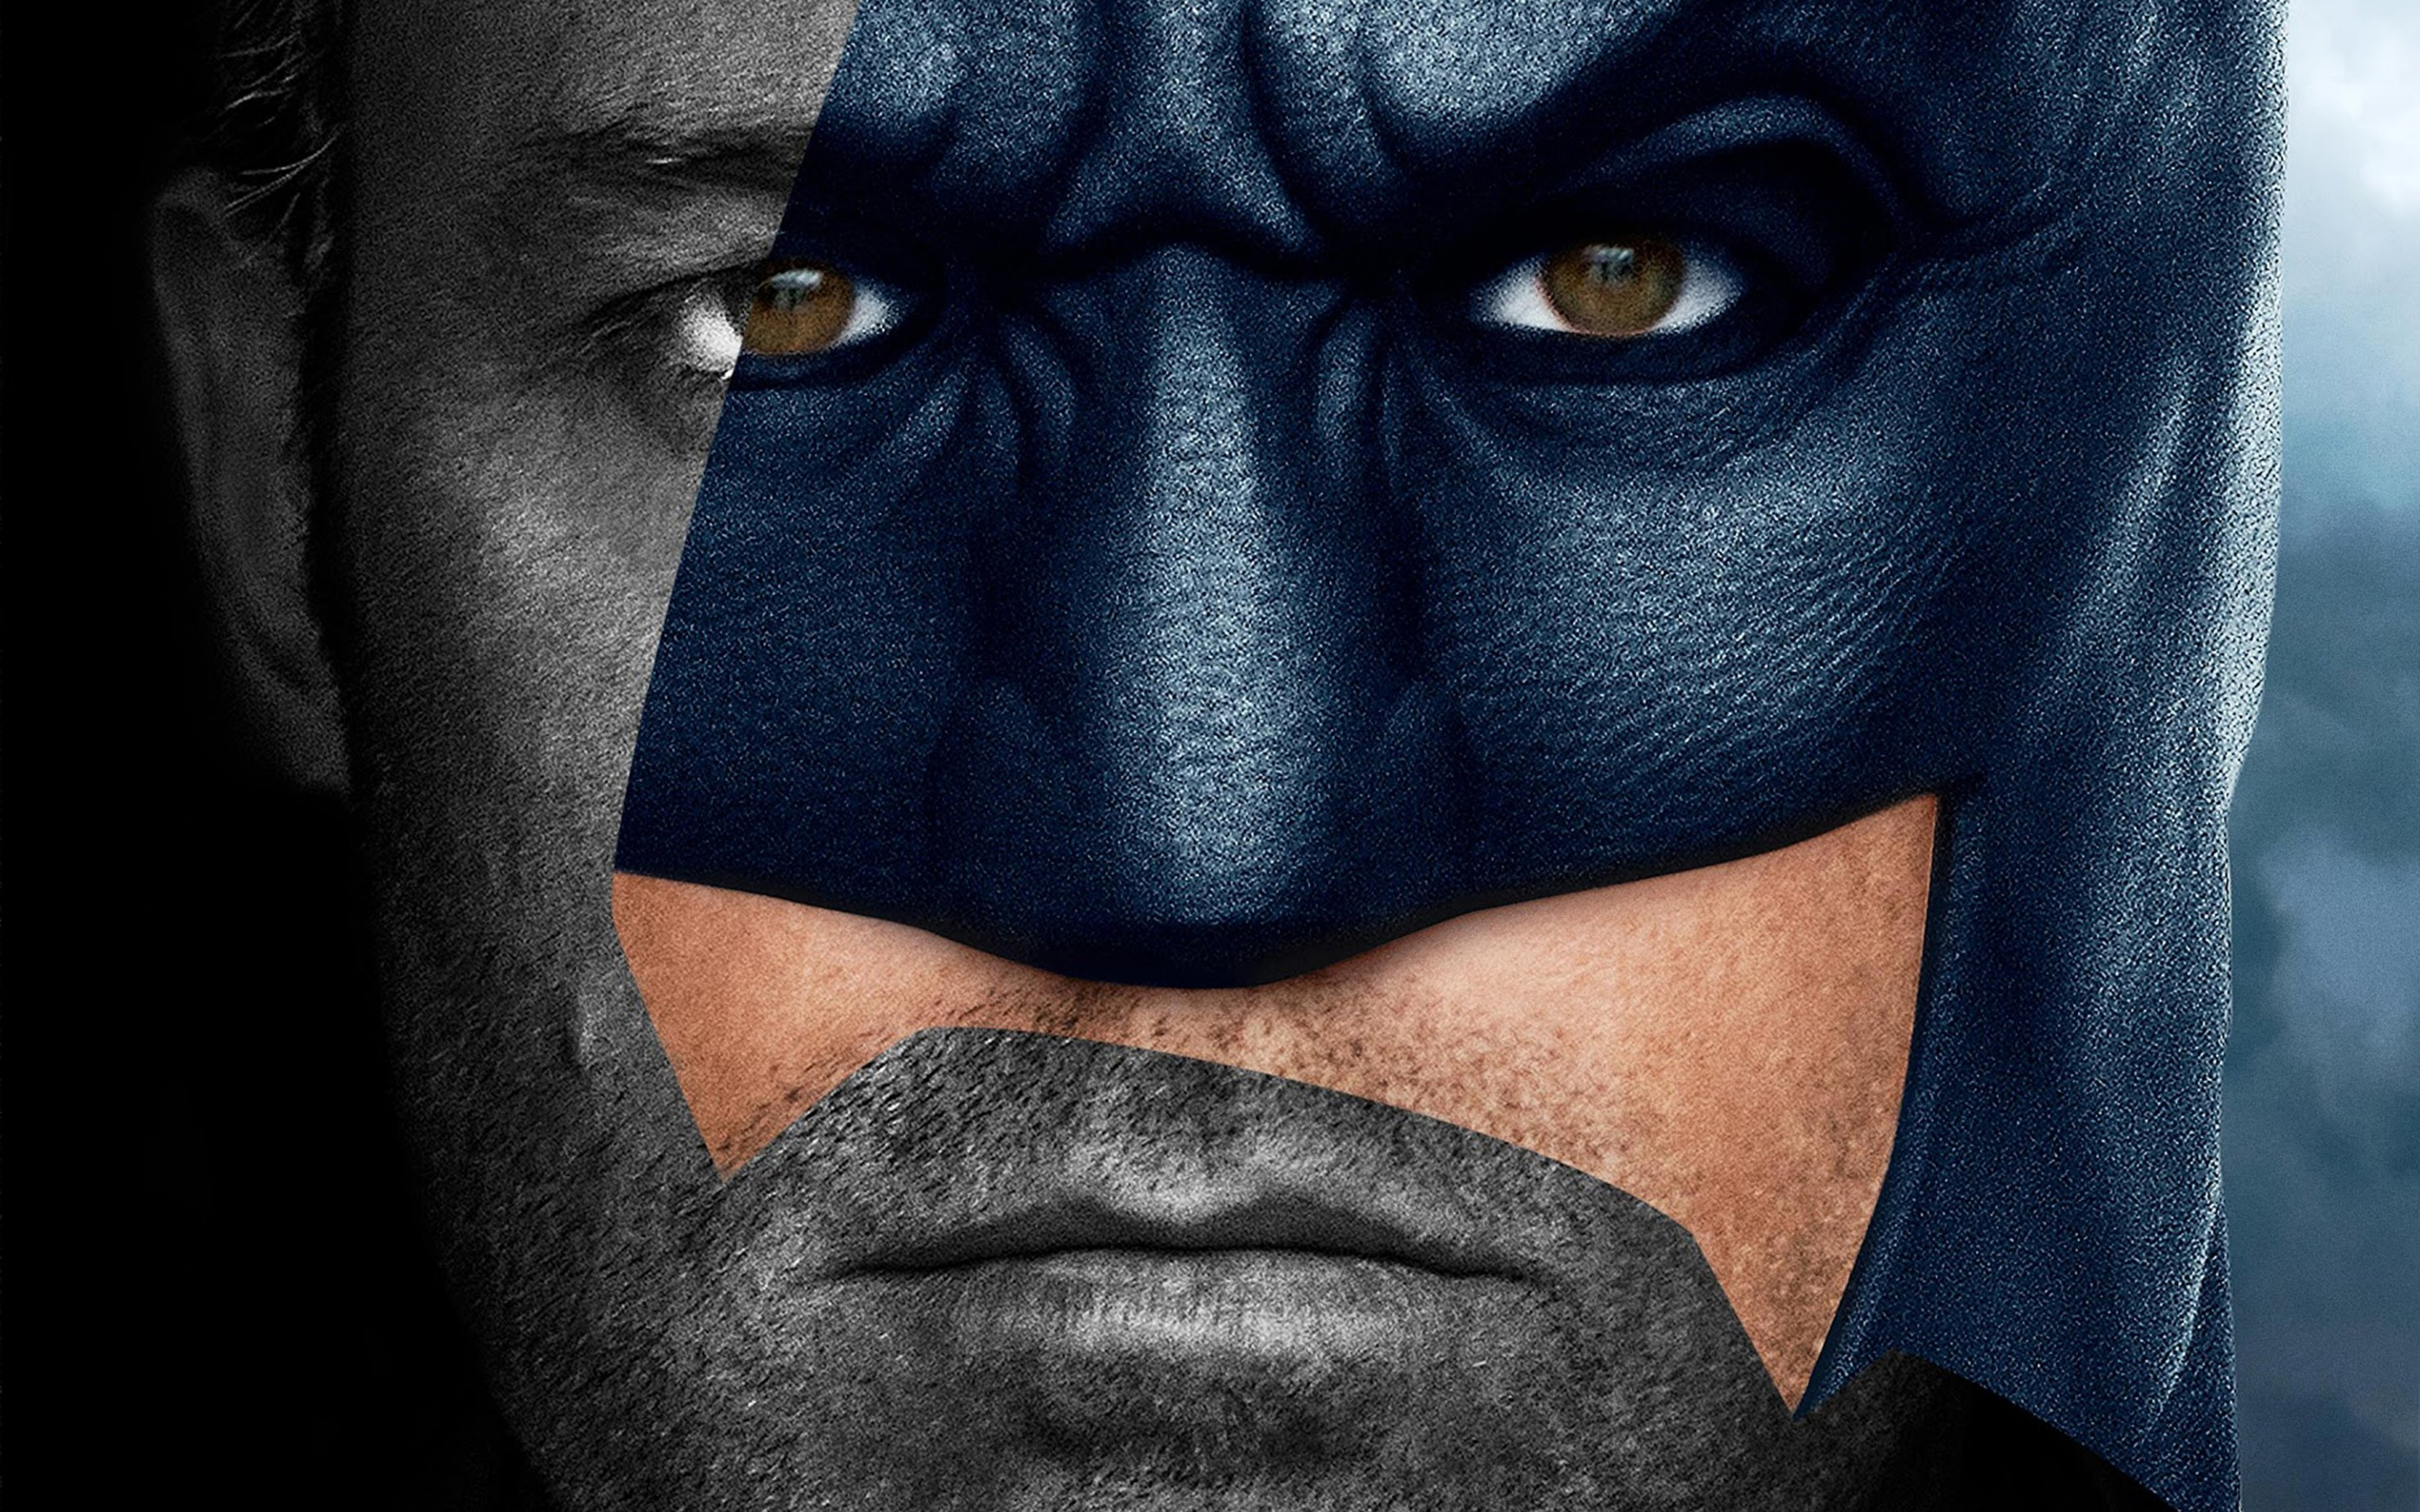 Batman, Ben Affleck, justice league, movie, 2880x1800 wallpaper